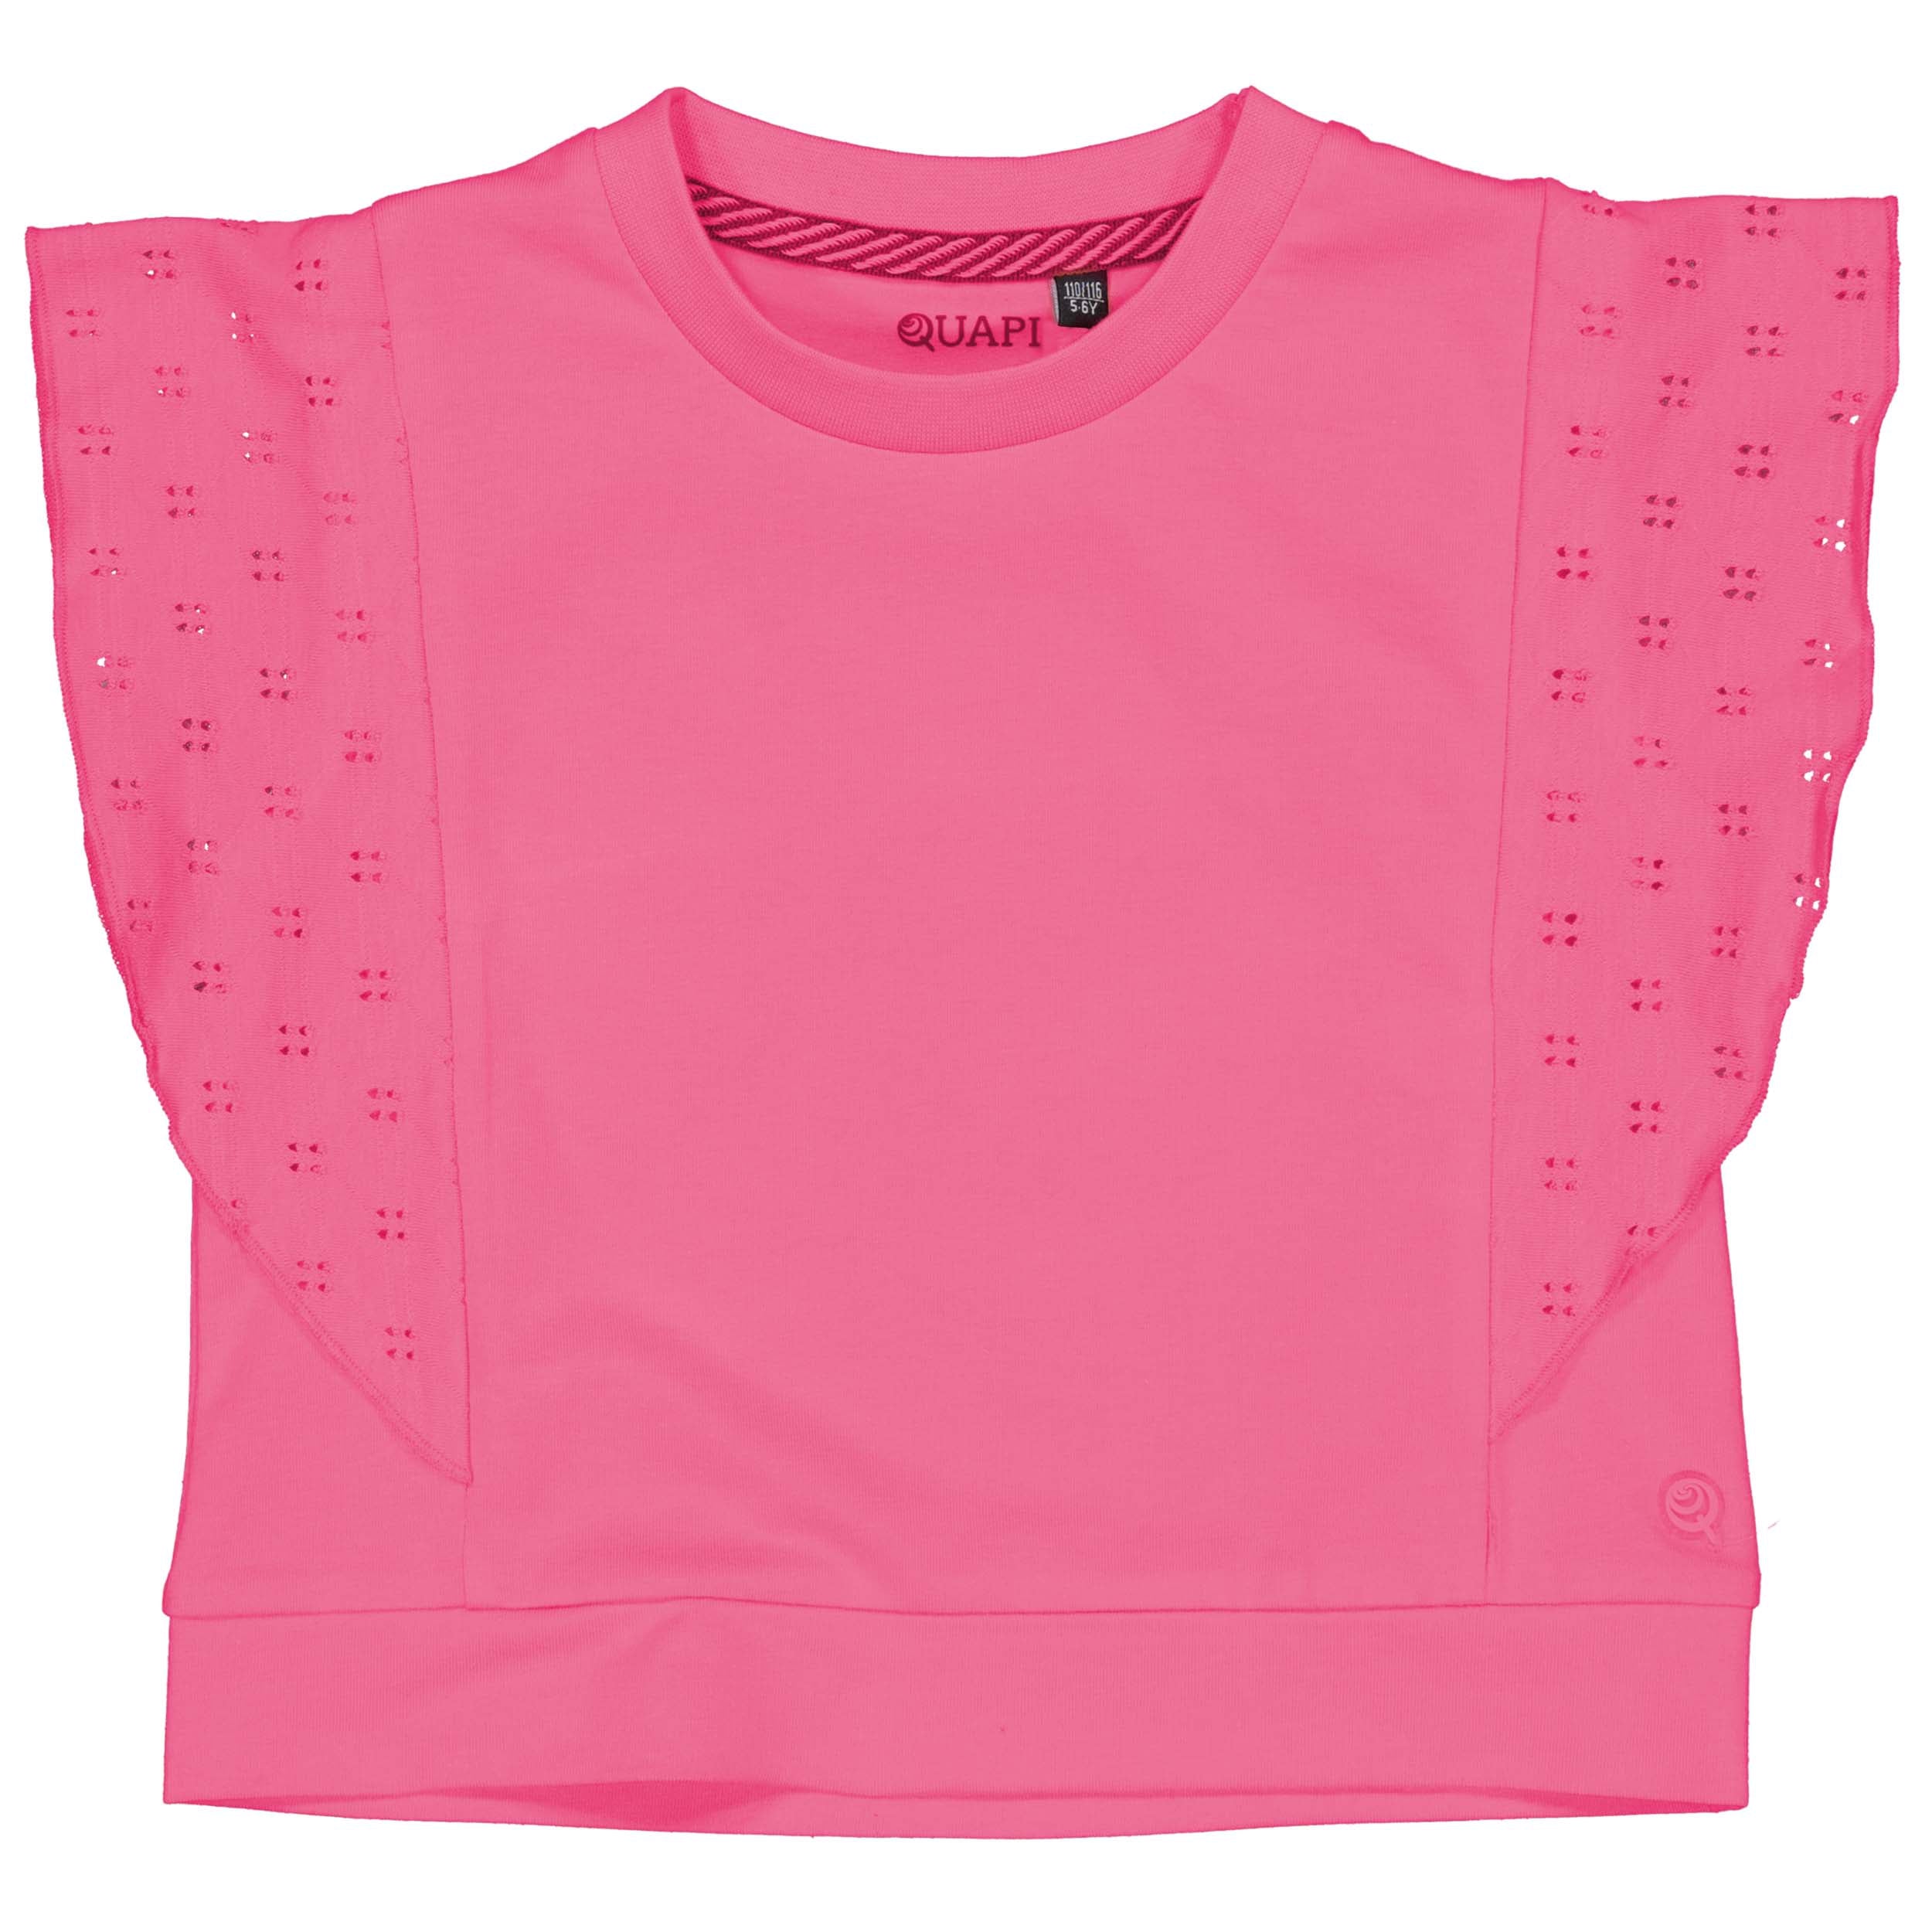 Meisjes Shortsleeve BIRGITQS242 van Quapi in de kleur Pink in maat 122-128.